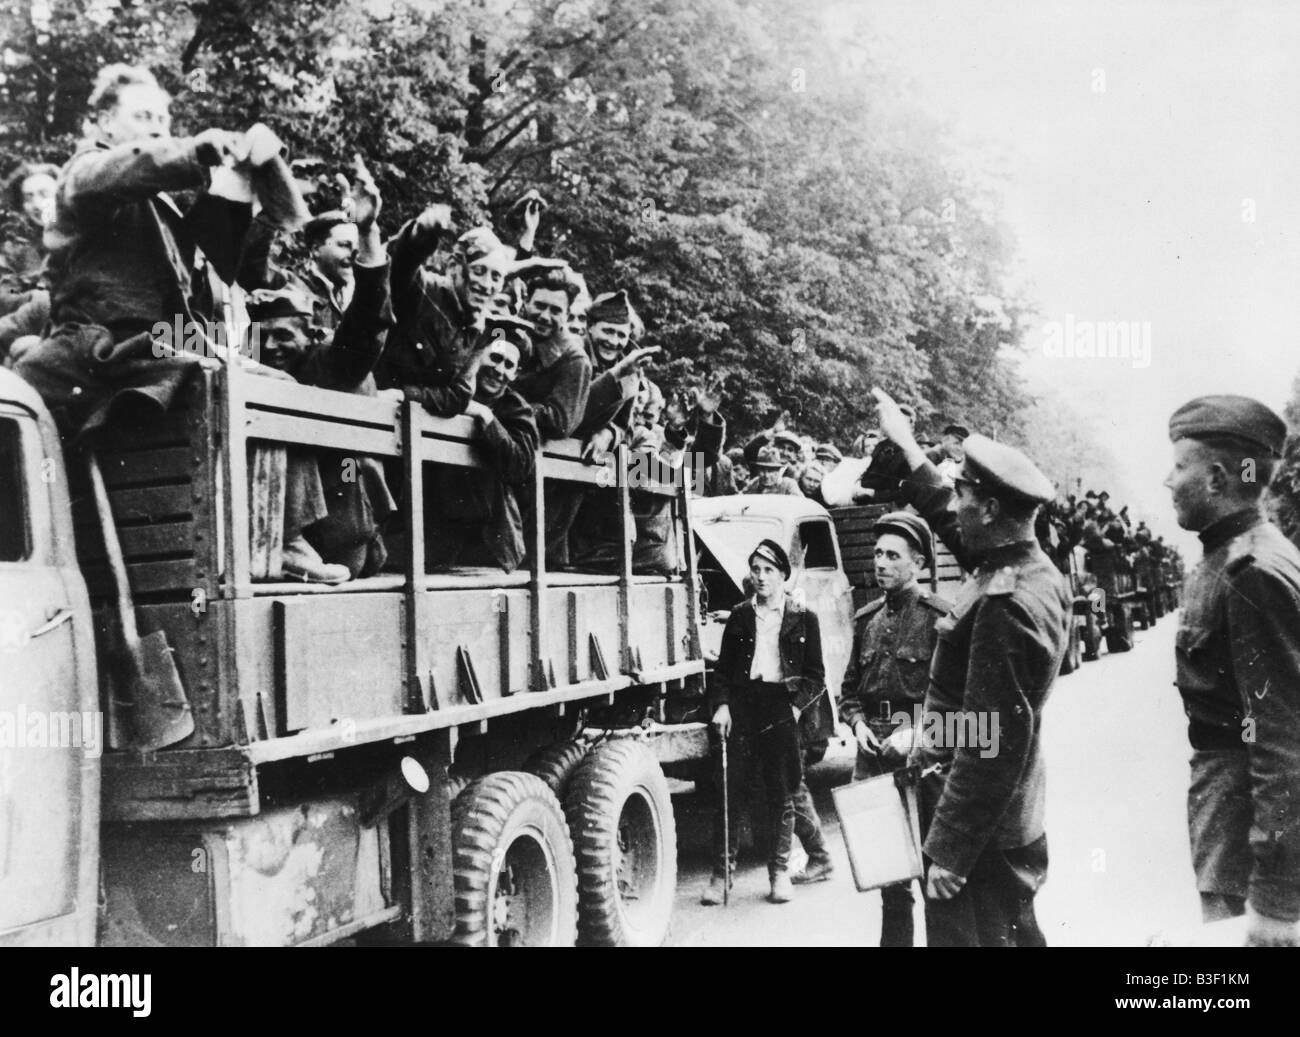 WW2/Fin de la guerra y los prisioneros de guerra. Foto de stock